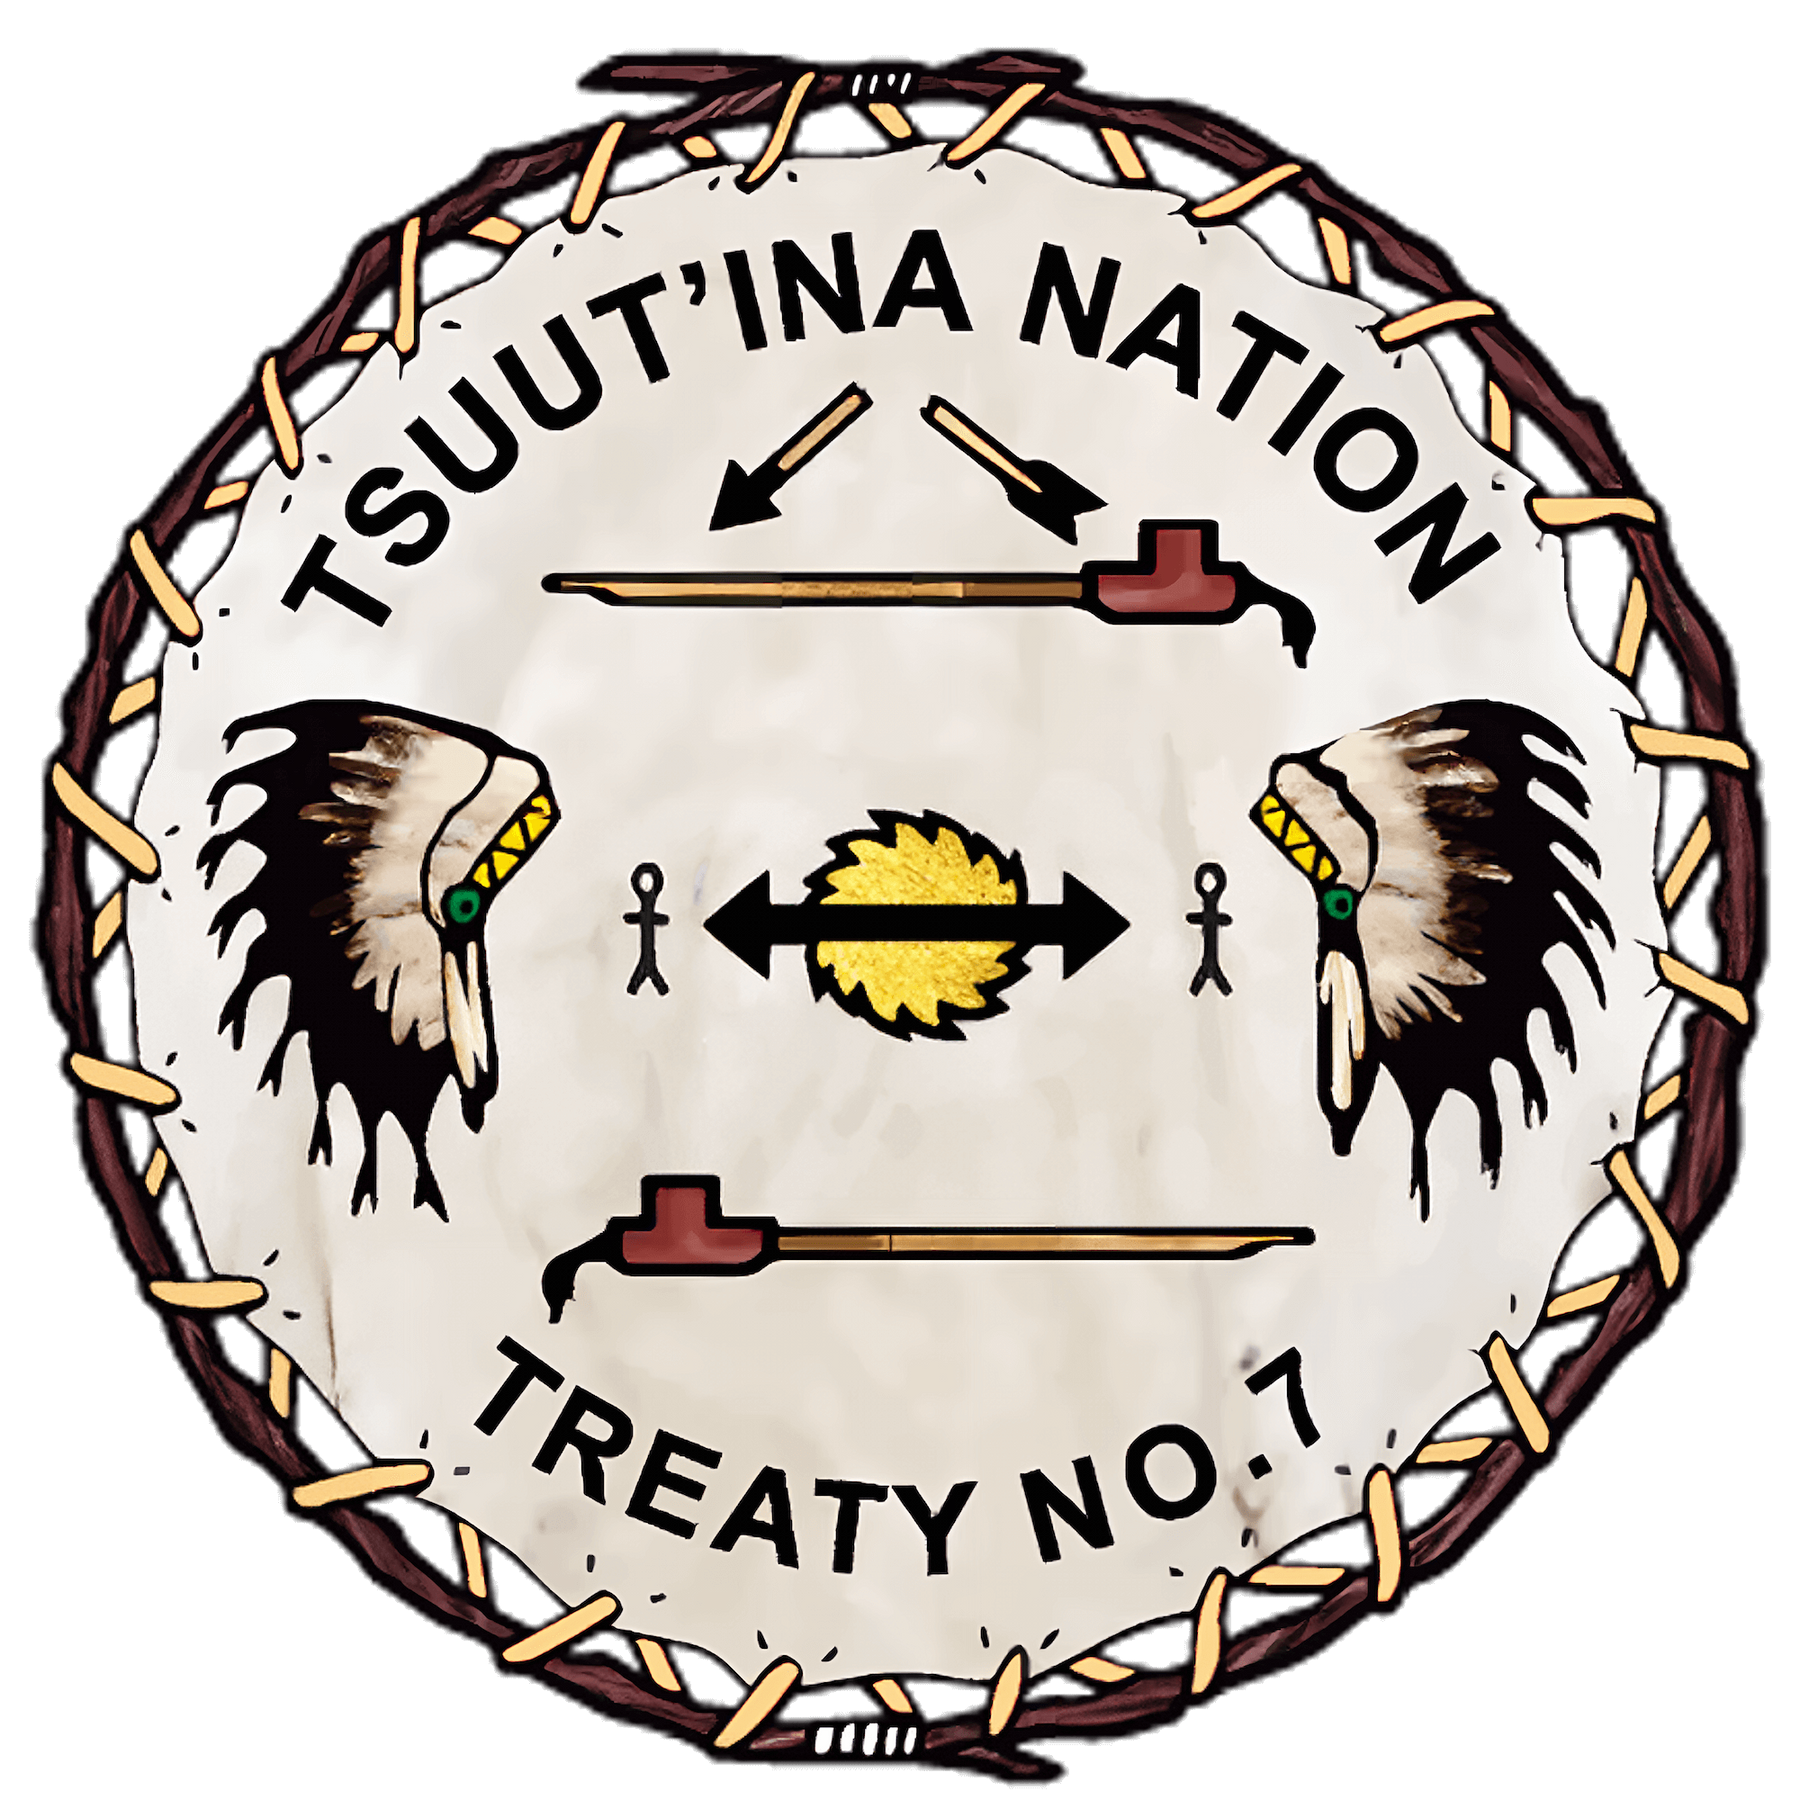 Logo for Tsuu T'ina Nation Treaty No.7